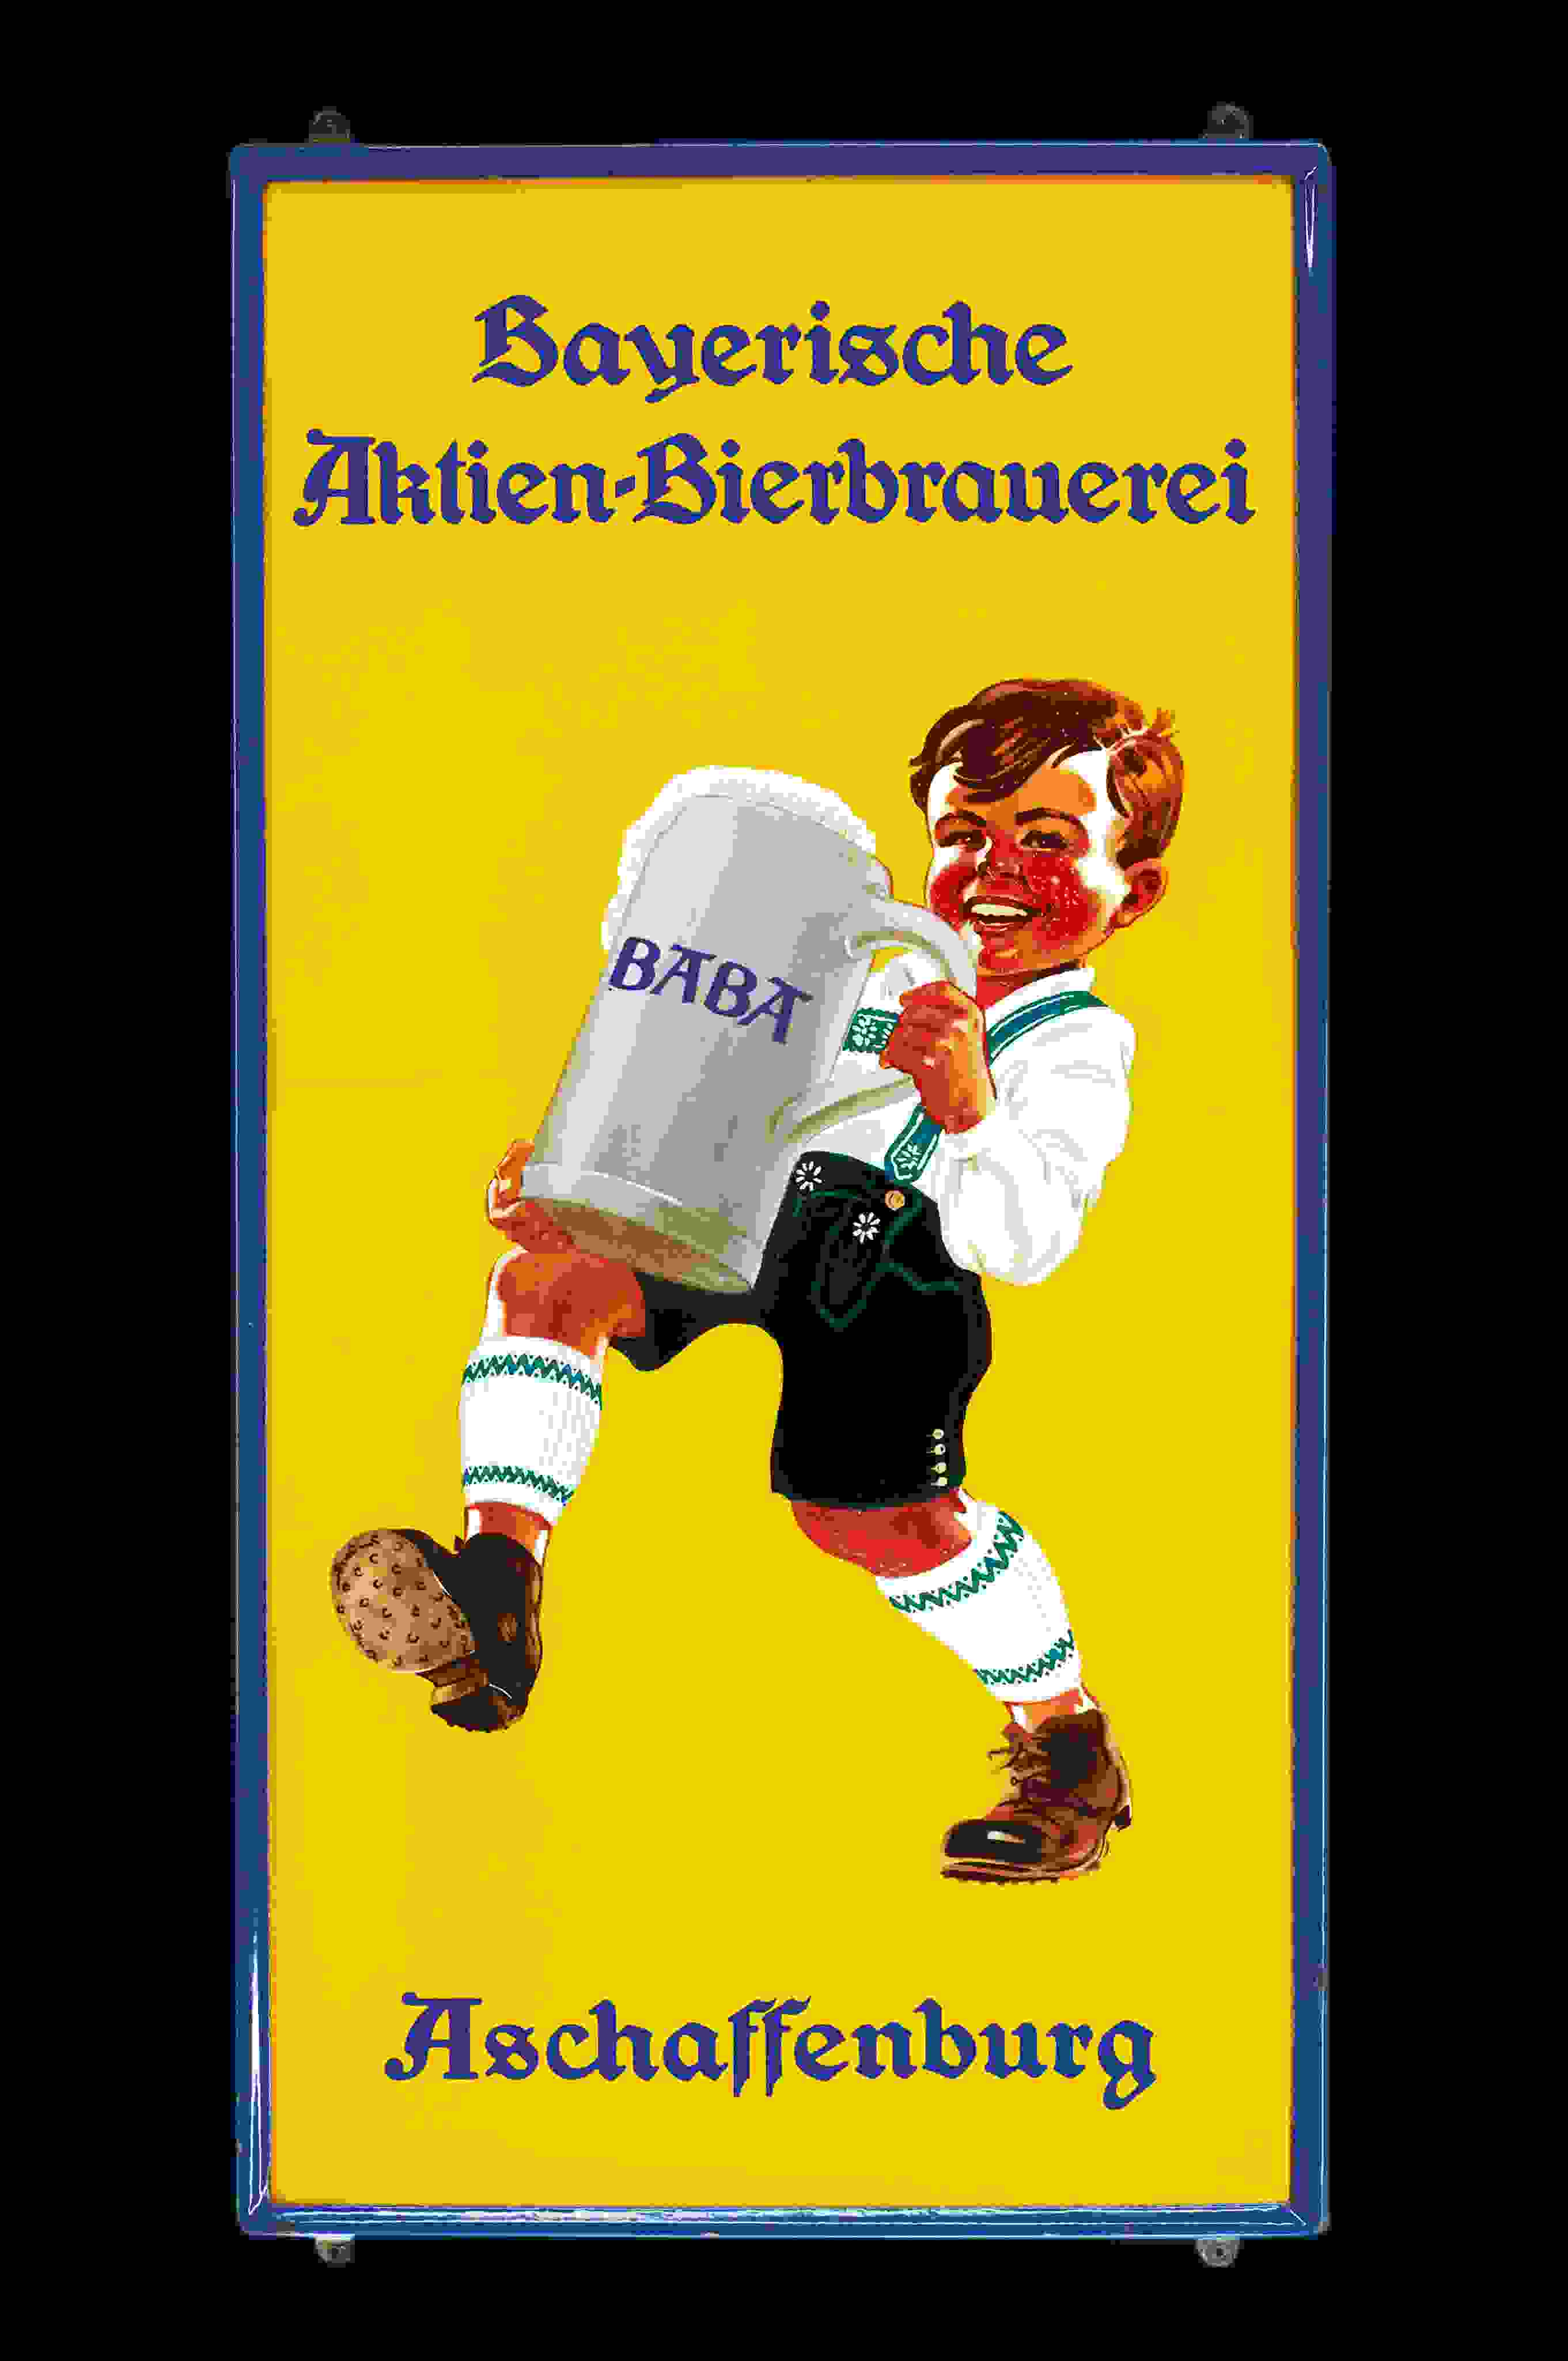 Bayerische Aktien-Bierbrauerei Baba 